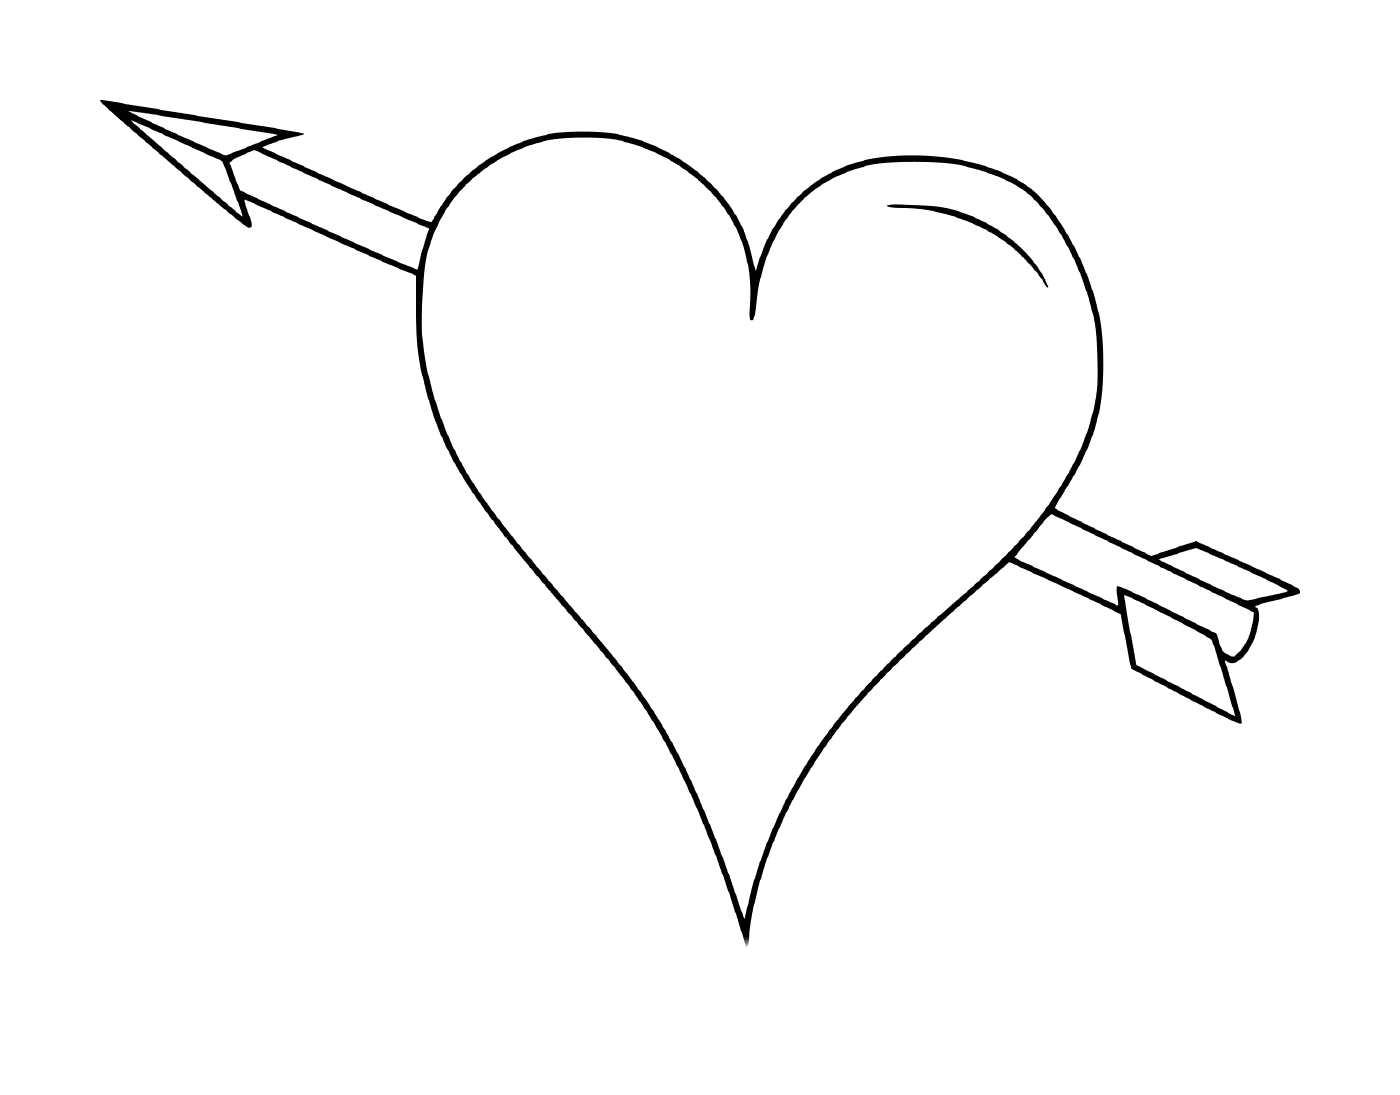  Un corazón con una flecha 